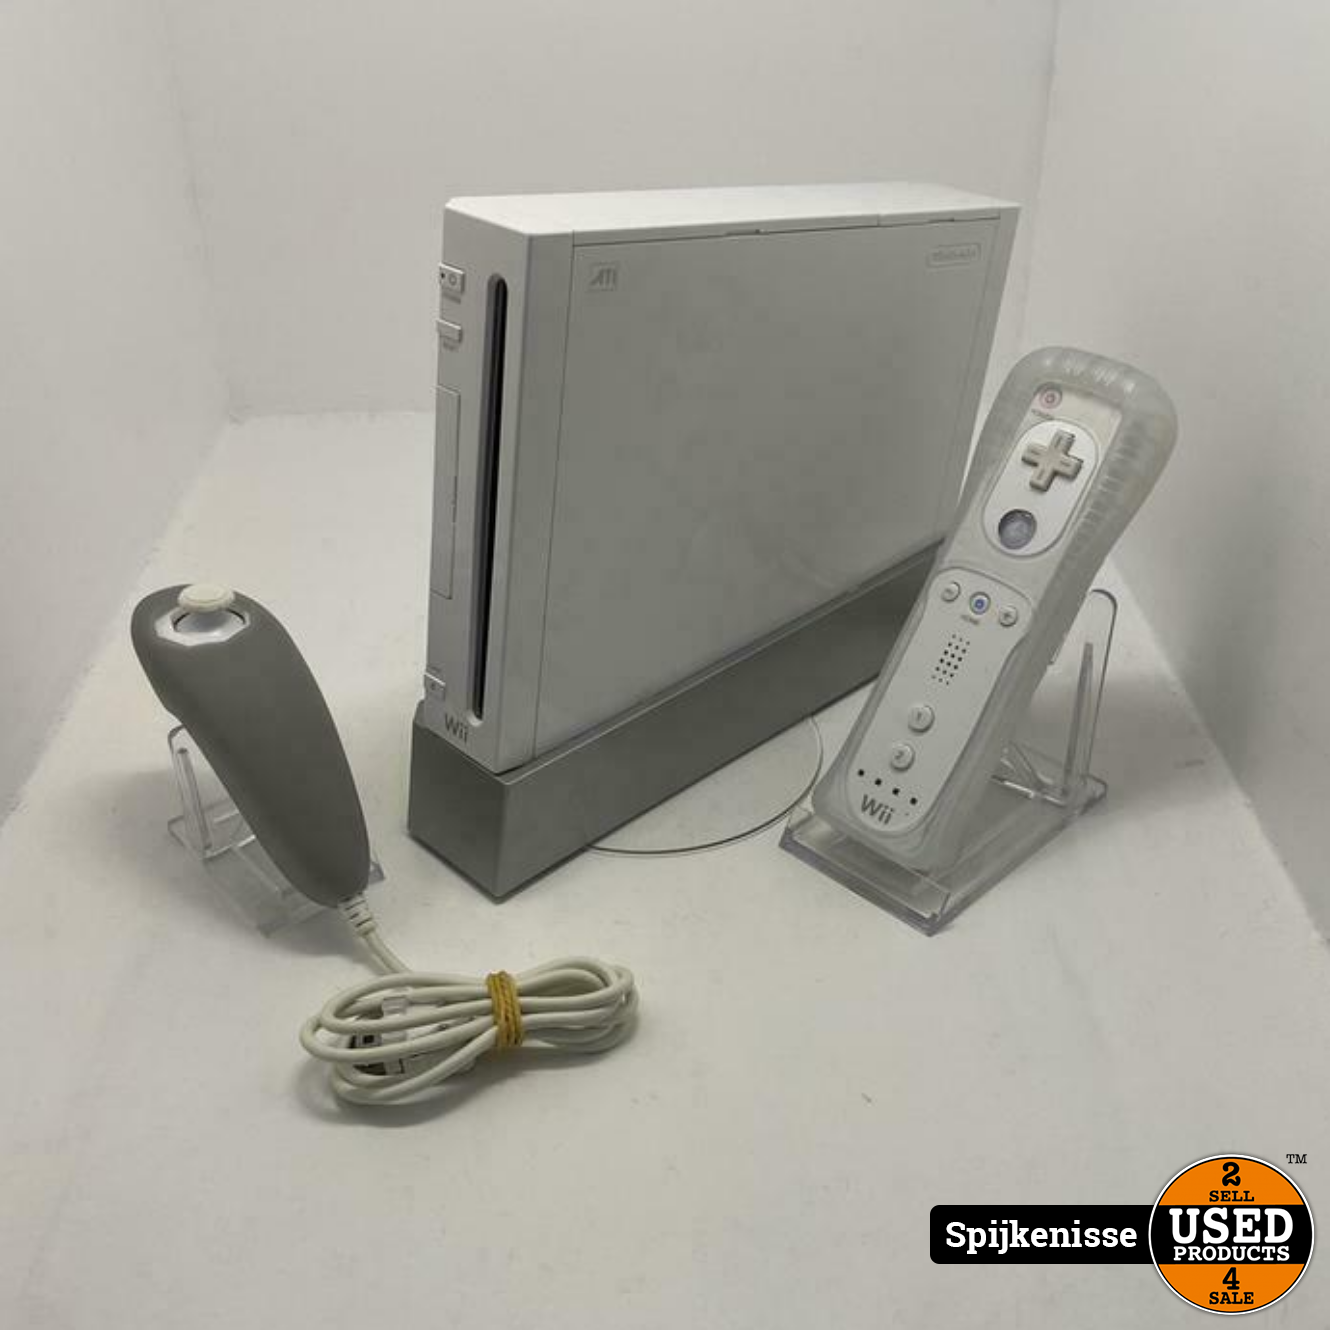 Pracht Gewoon Elastisch Nintendo Wii + Controller & Nunchuck *805018* - Used Products Spijkenisse